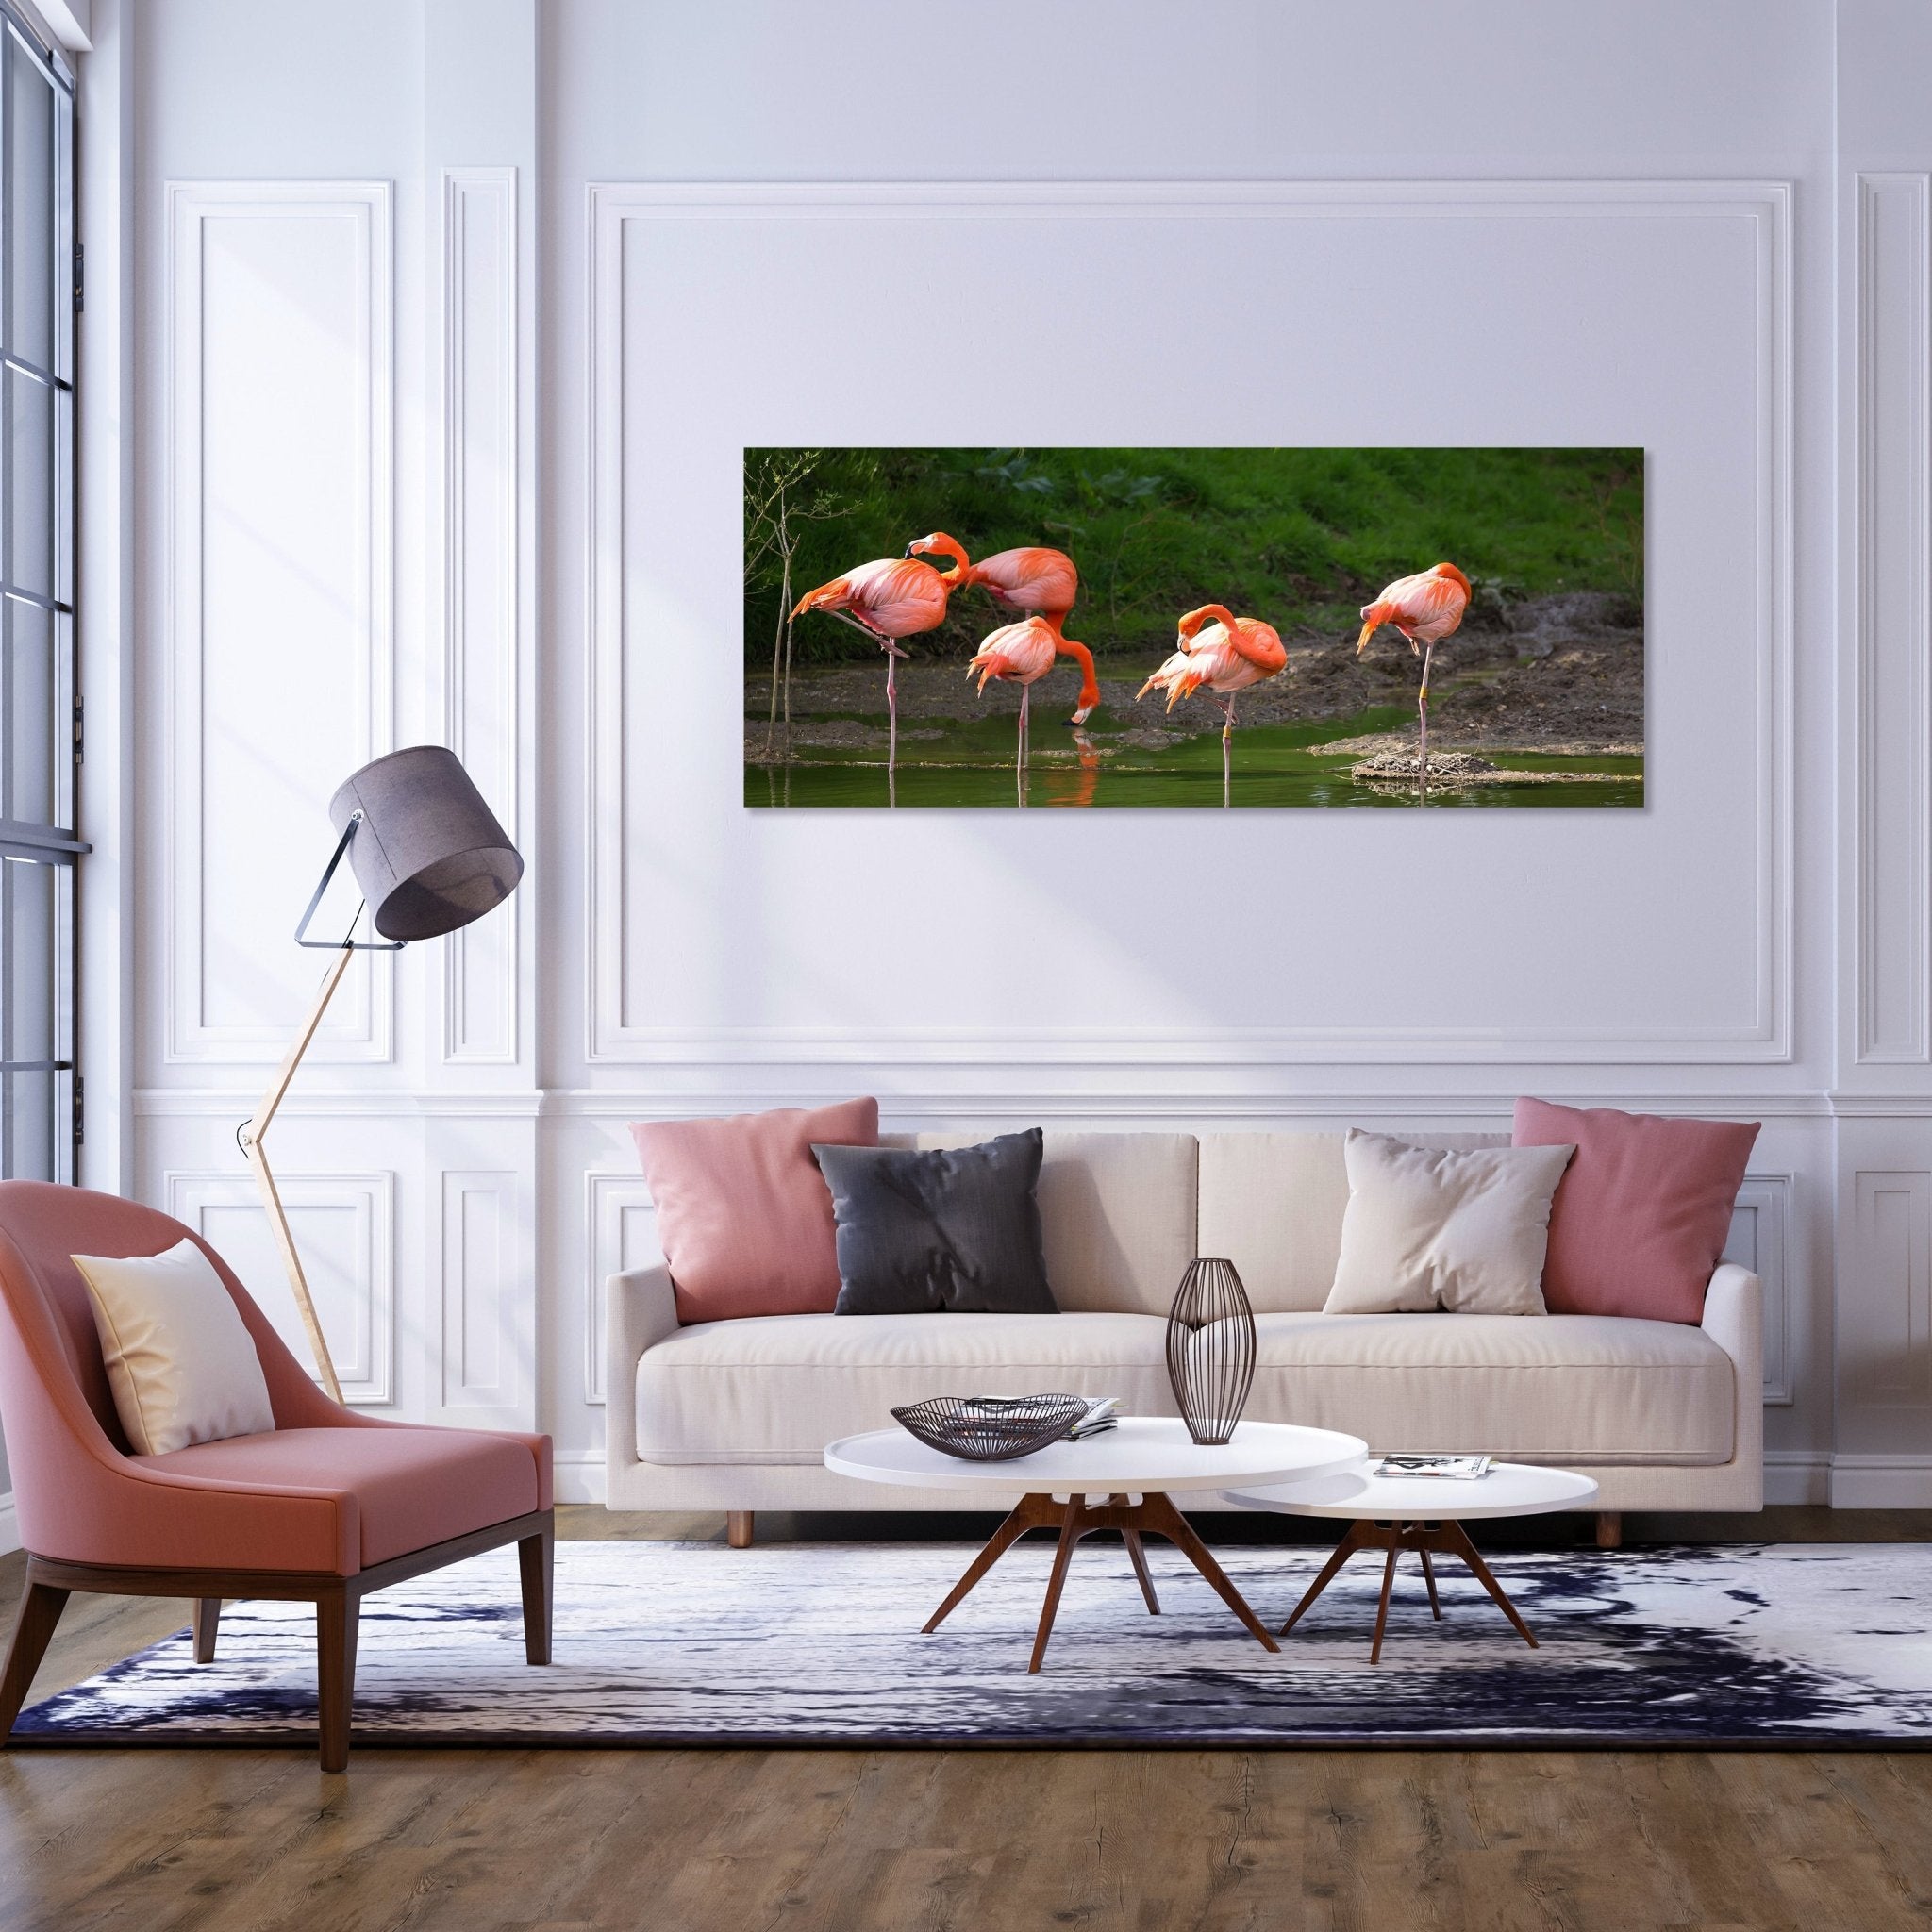 Leinwandbild Flamingos in einem Pool M1009 kaufen - Bild 2